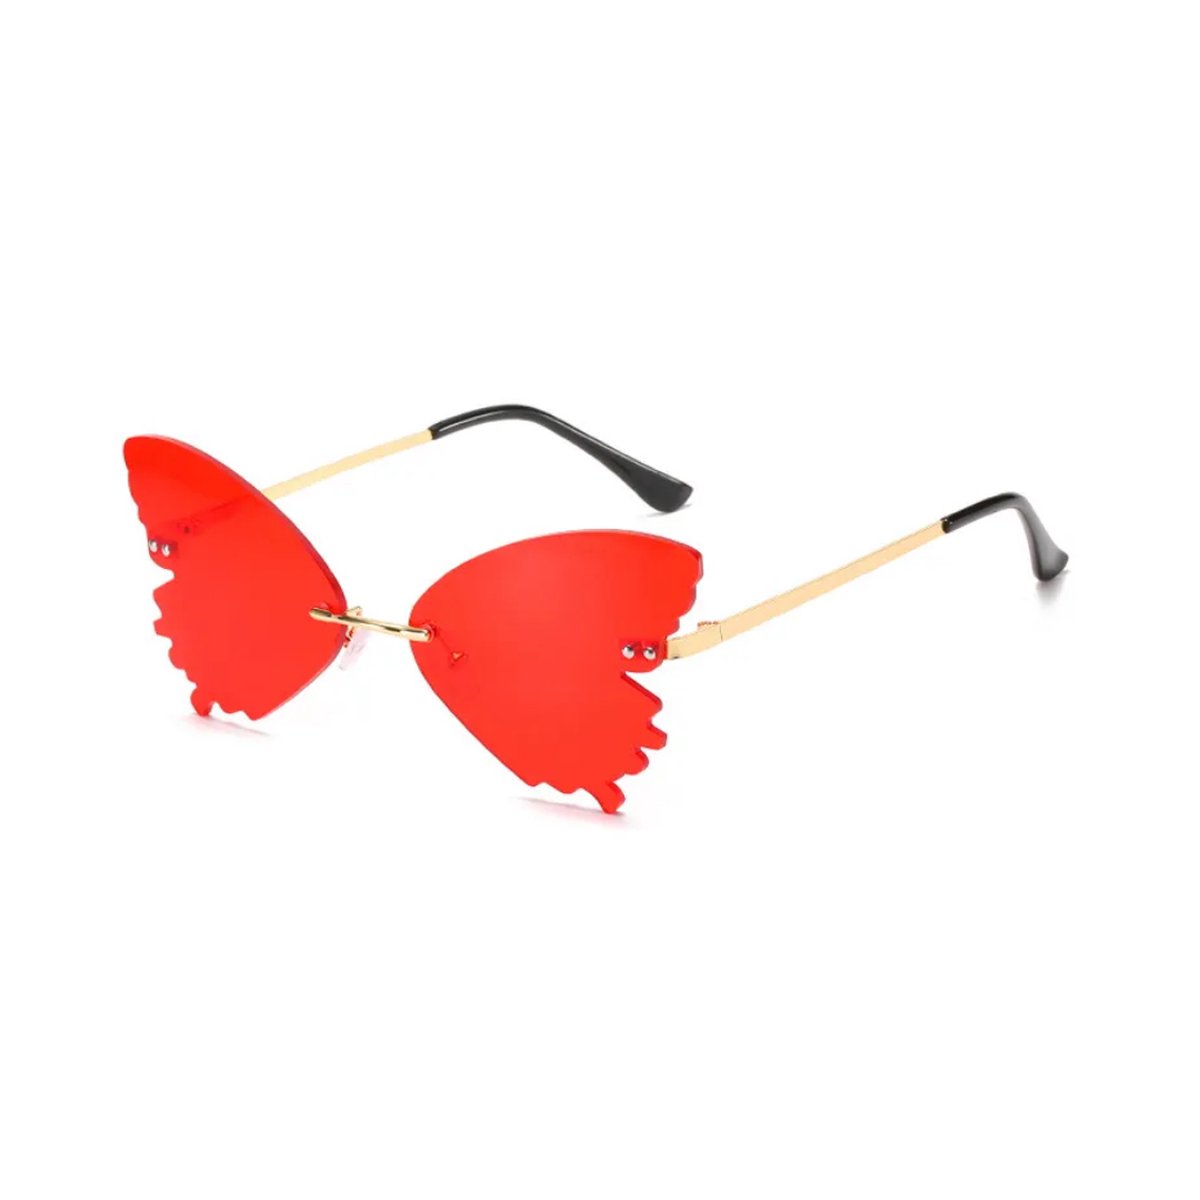 Vlinder zonnebril - Rood - festivalbril / hippie bril / technobril / rave bril / butterfly glasses / retro zonnebril / carnaval bril / accessoires / feest bril / gekke bril / verkleed bril